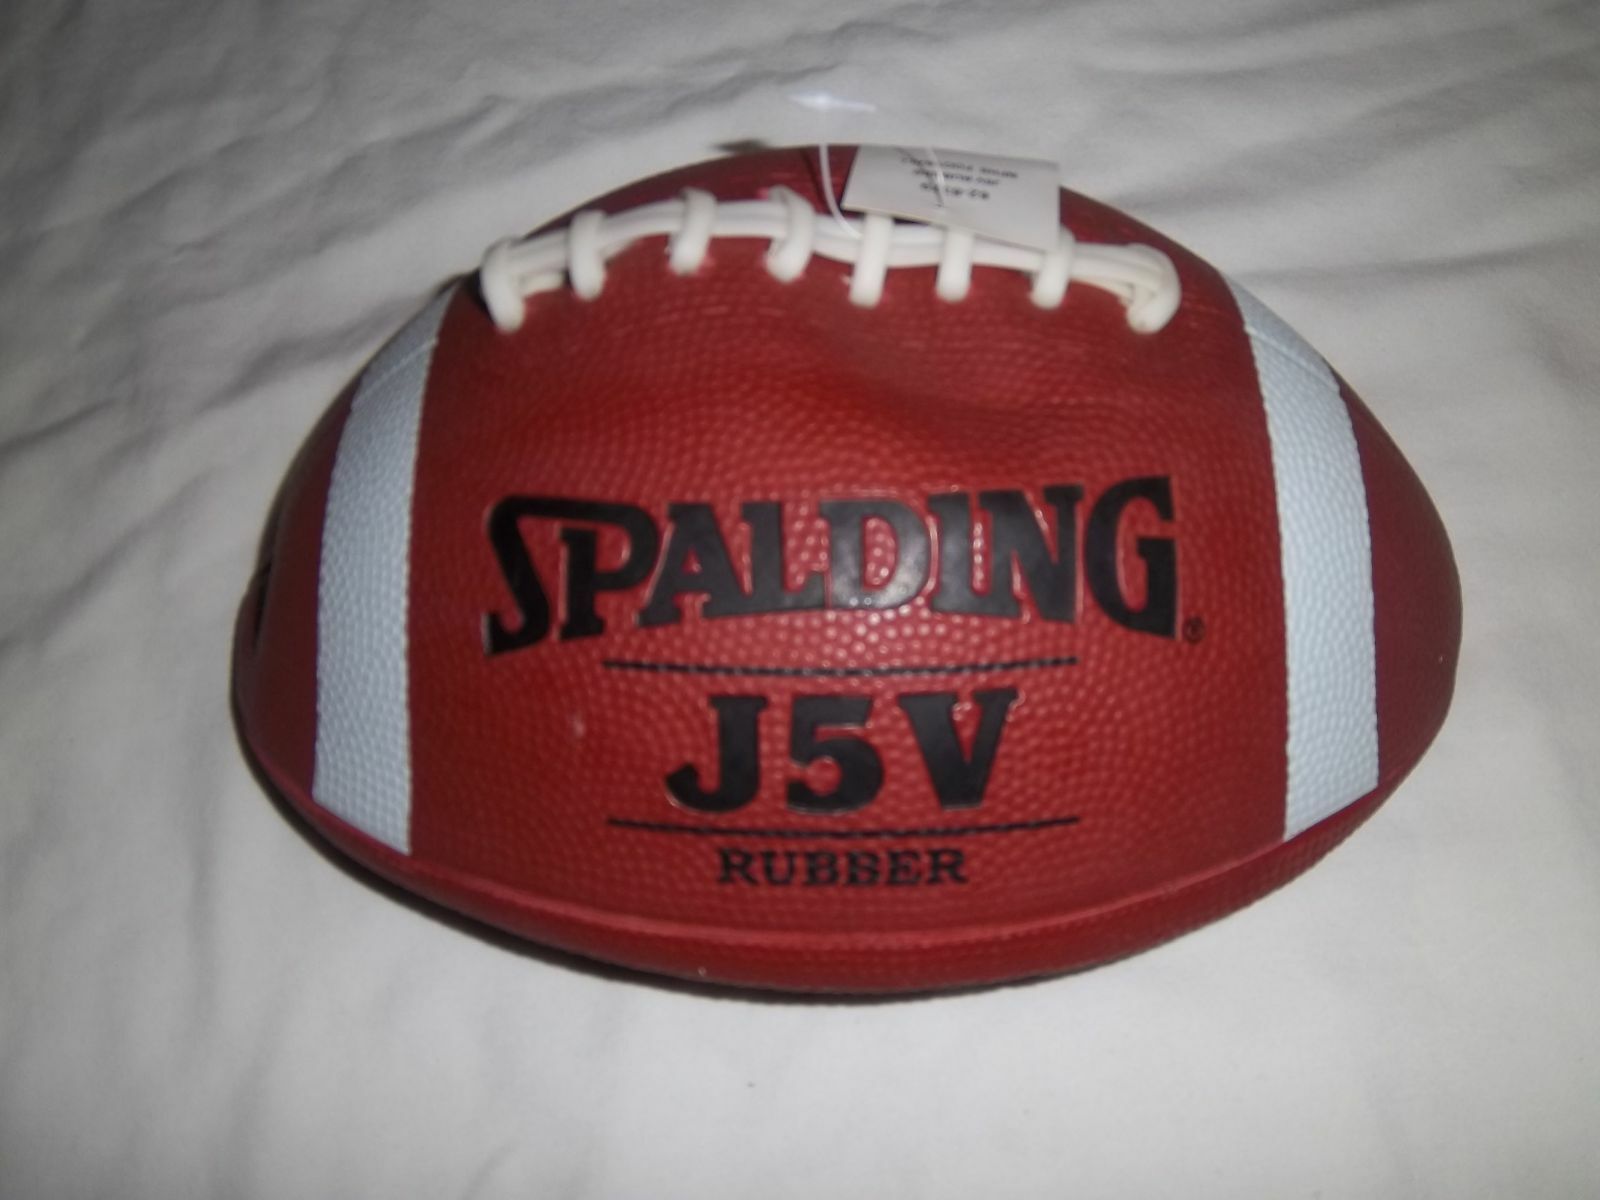 SPALDING J5V VARSITY RUBBER  FOOTBALL